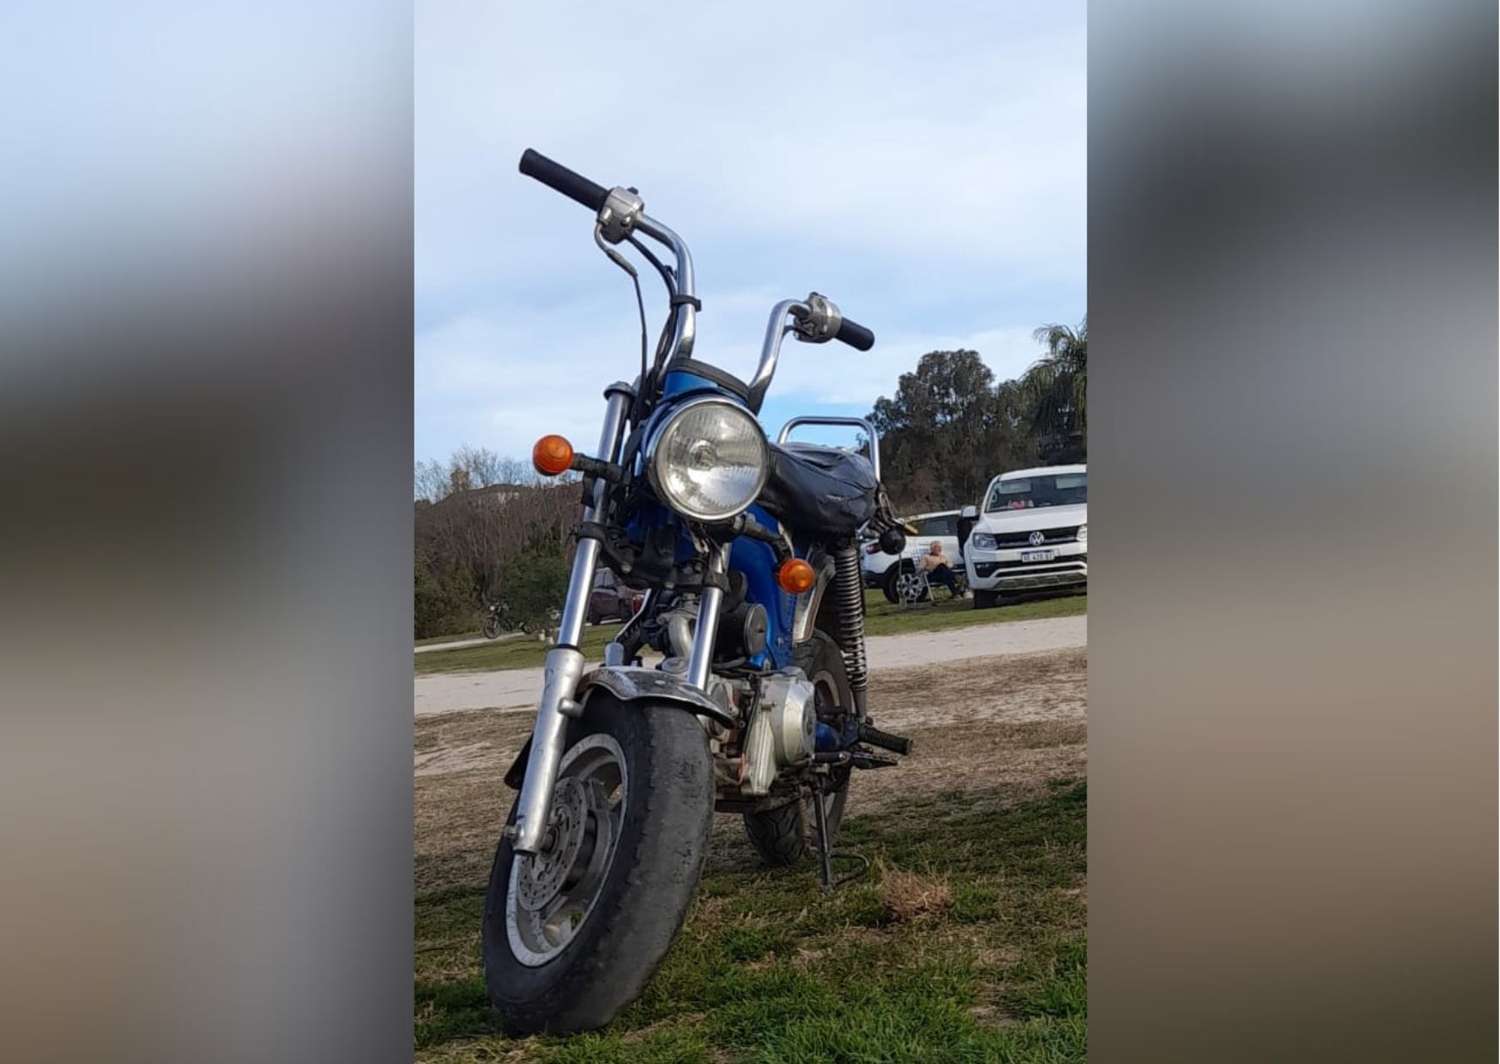 Ingresaron al patio de su casa y le robaron la moto